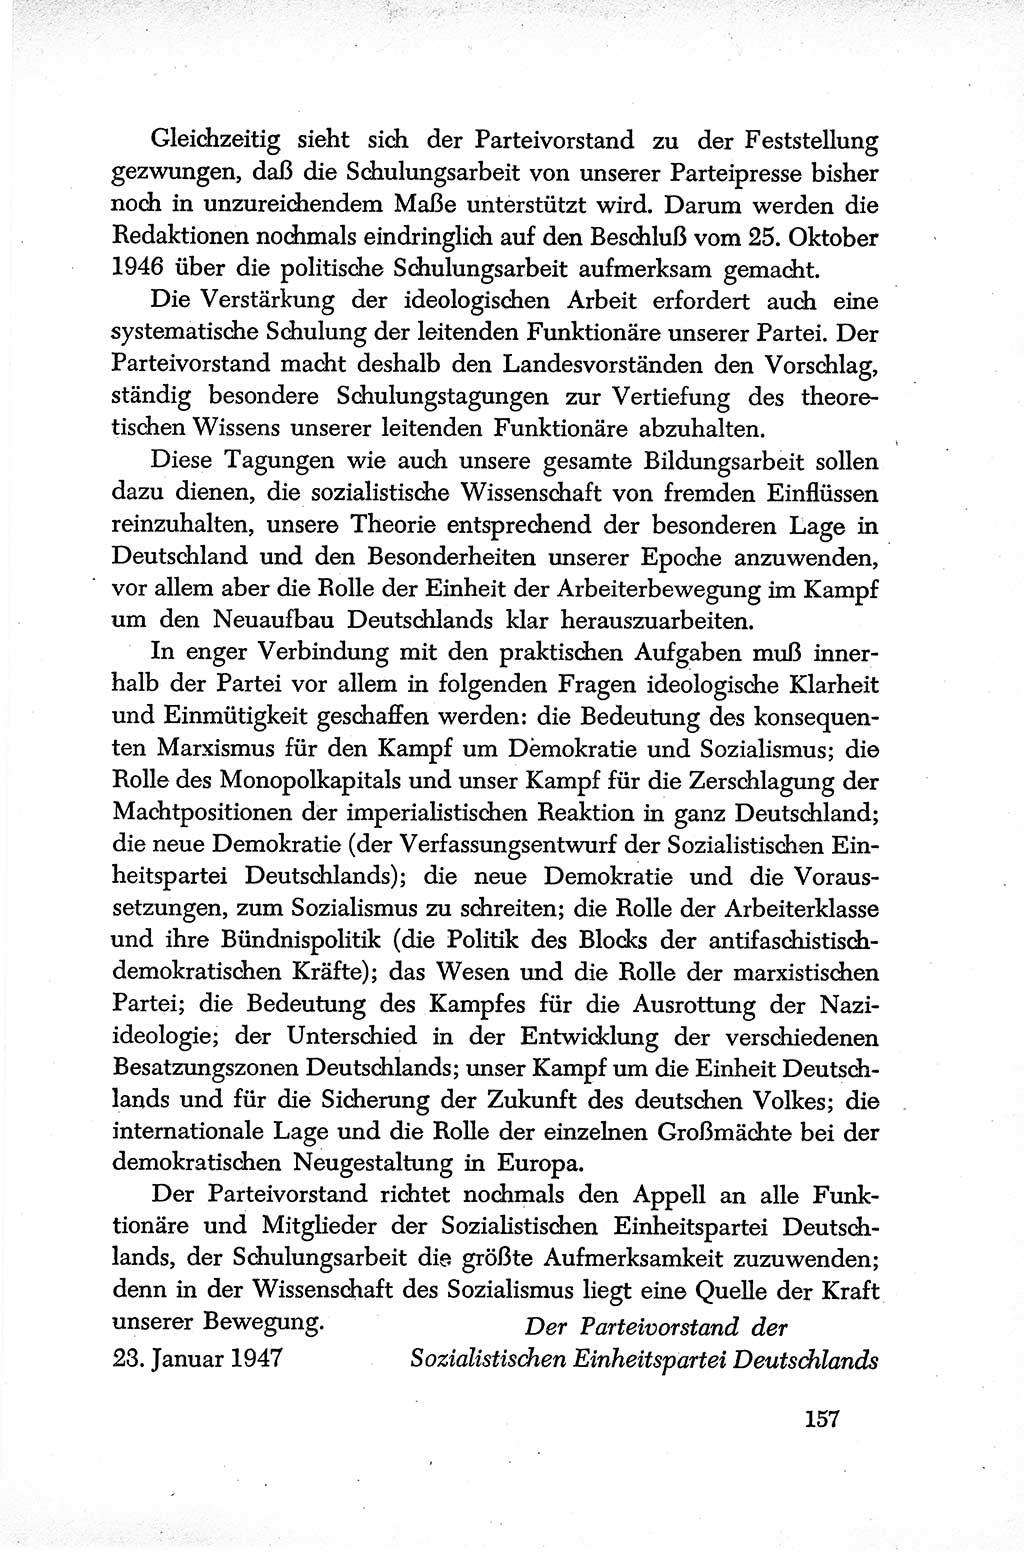 Dokumente der Sozialistischen Einheitspartei Deutschlands (SED) [Sowjetische Besatzungszone (SBZ) Deutschlands] 1946-1948, Seite 157 (Dok. SED SBZ Dtl. 1946-1948, S. 157)